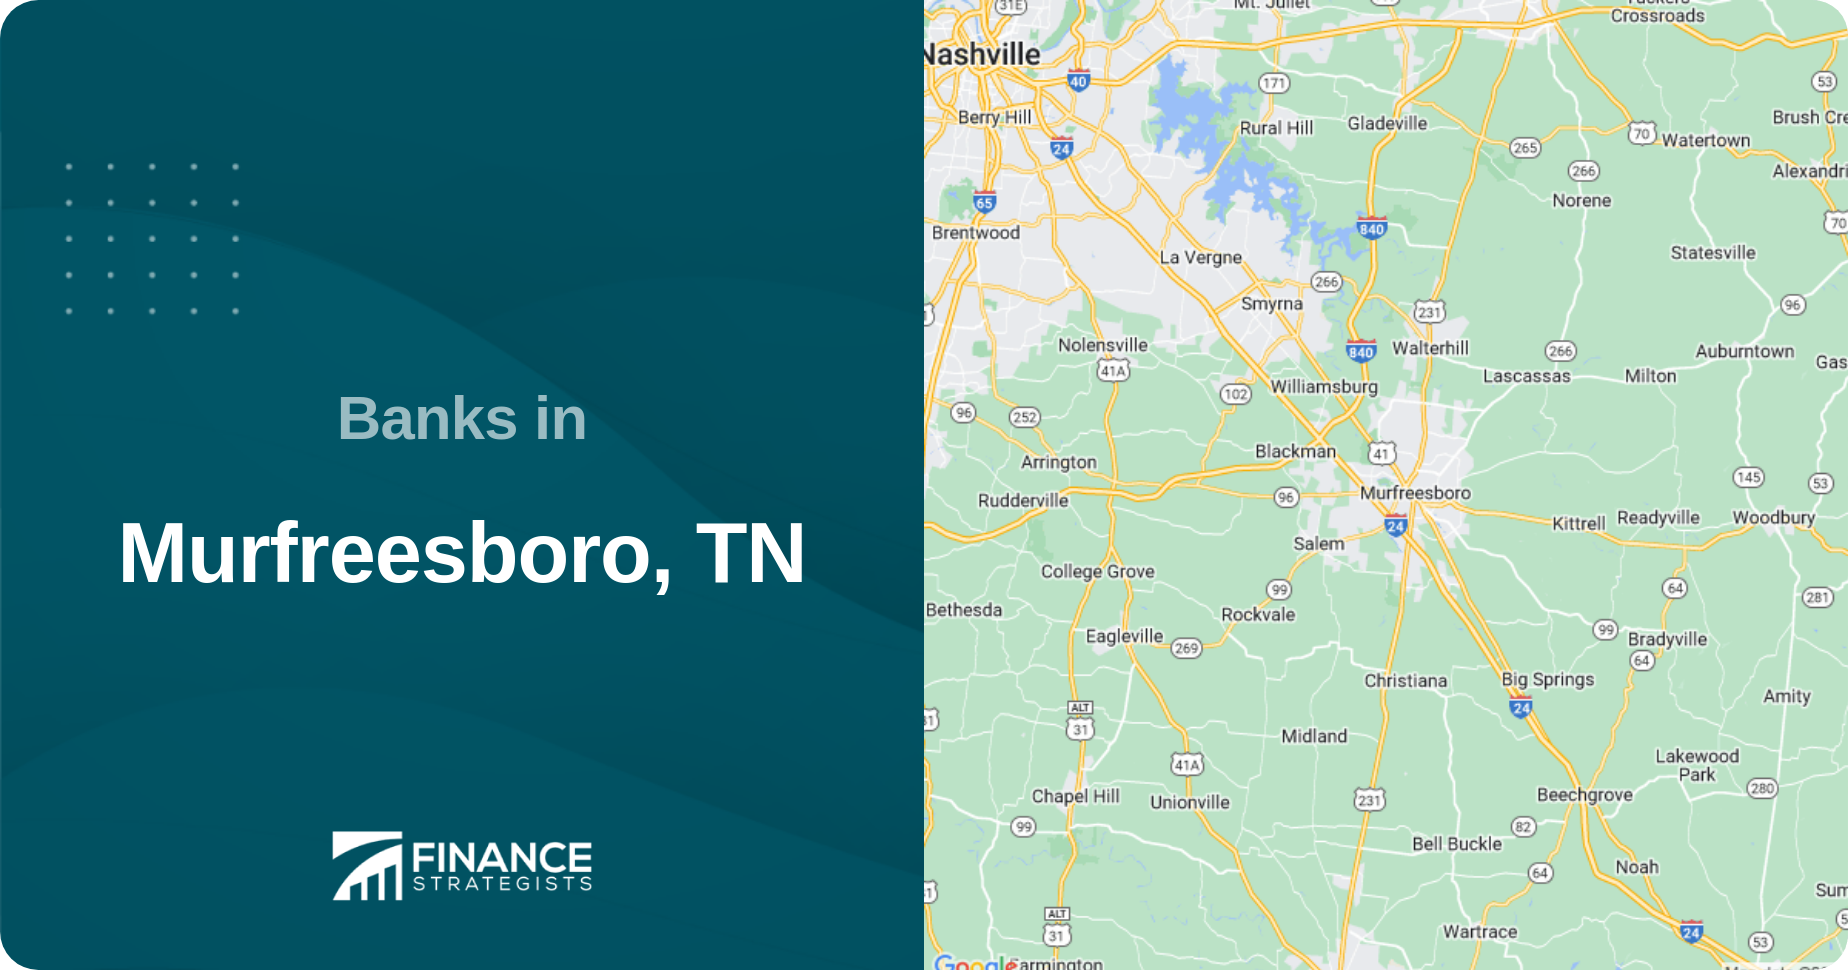 Banks in Murfreesboro, TN